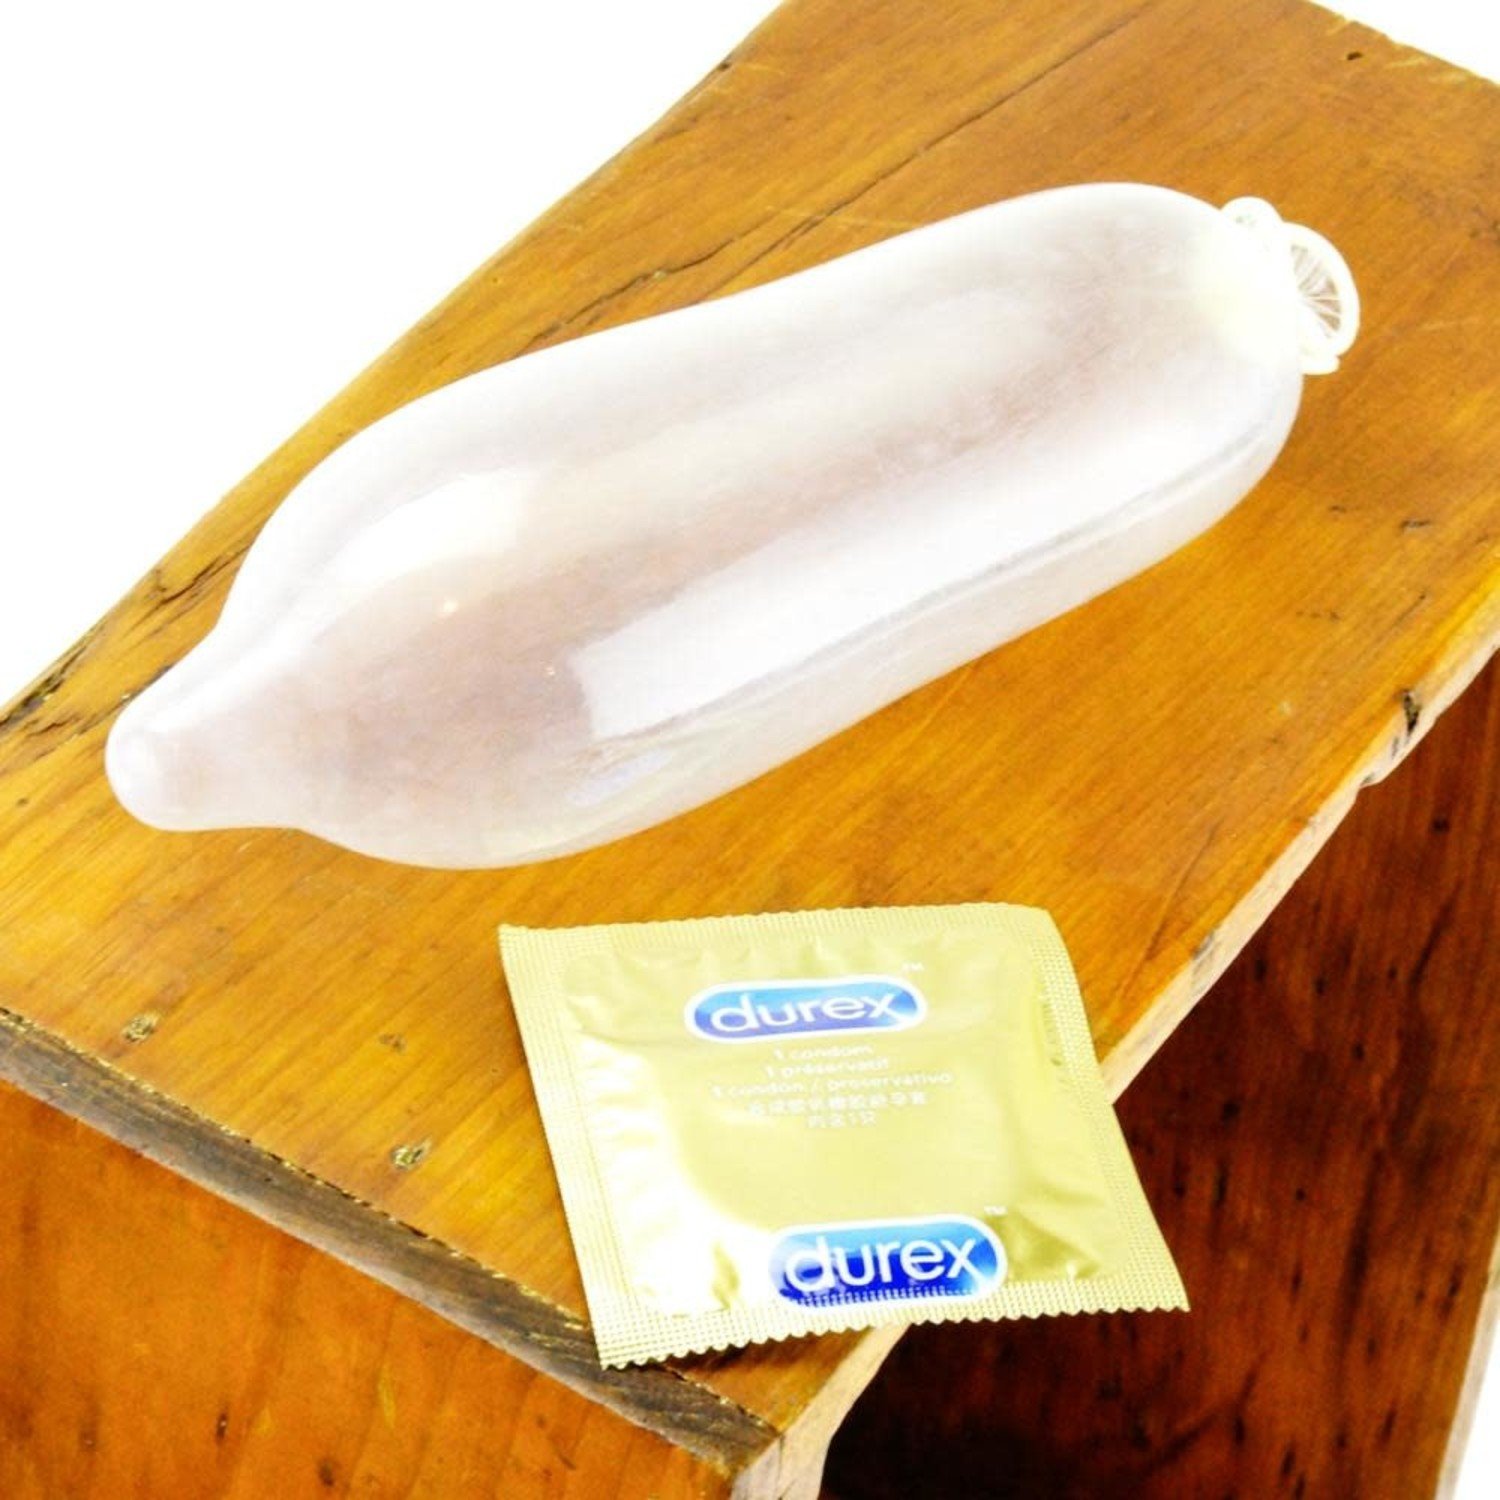 Durex Real Feel Non Latex Condoms